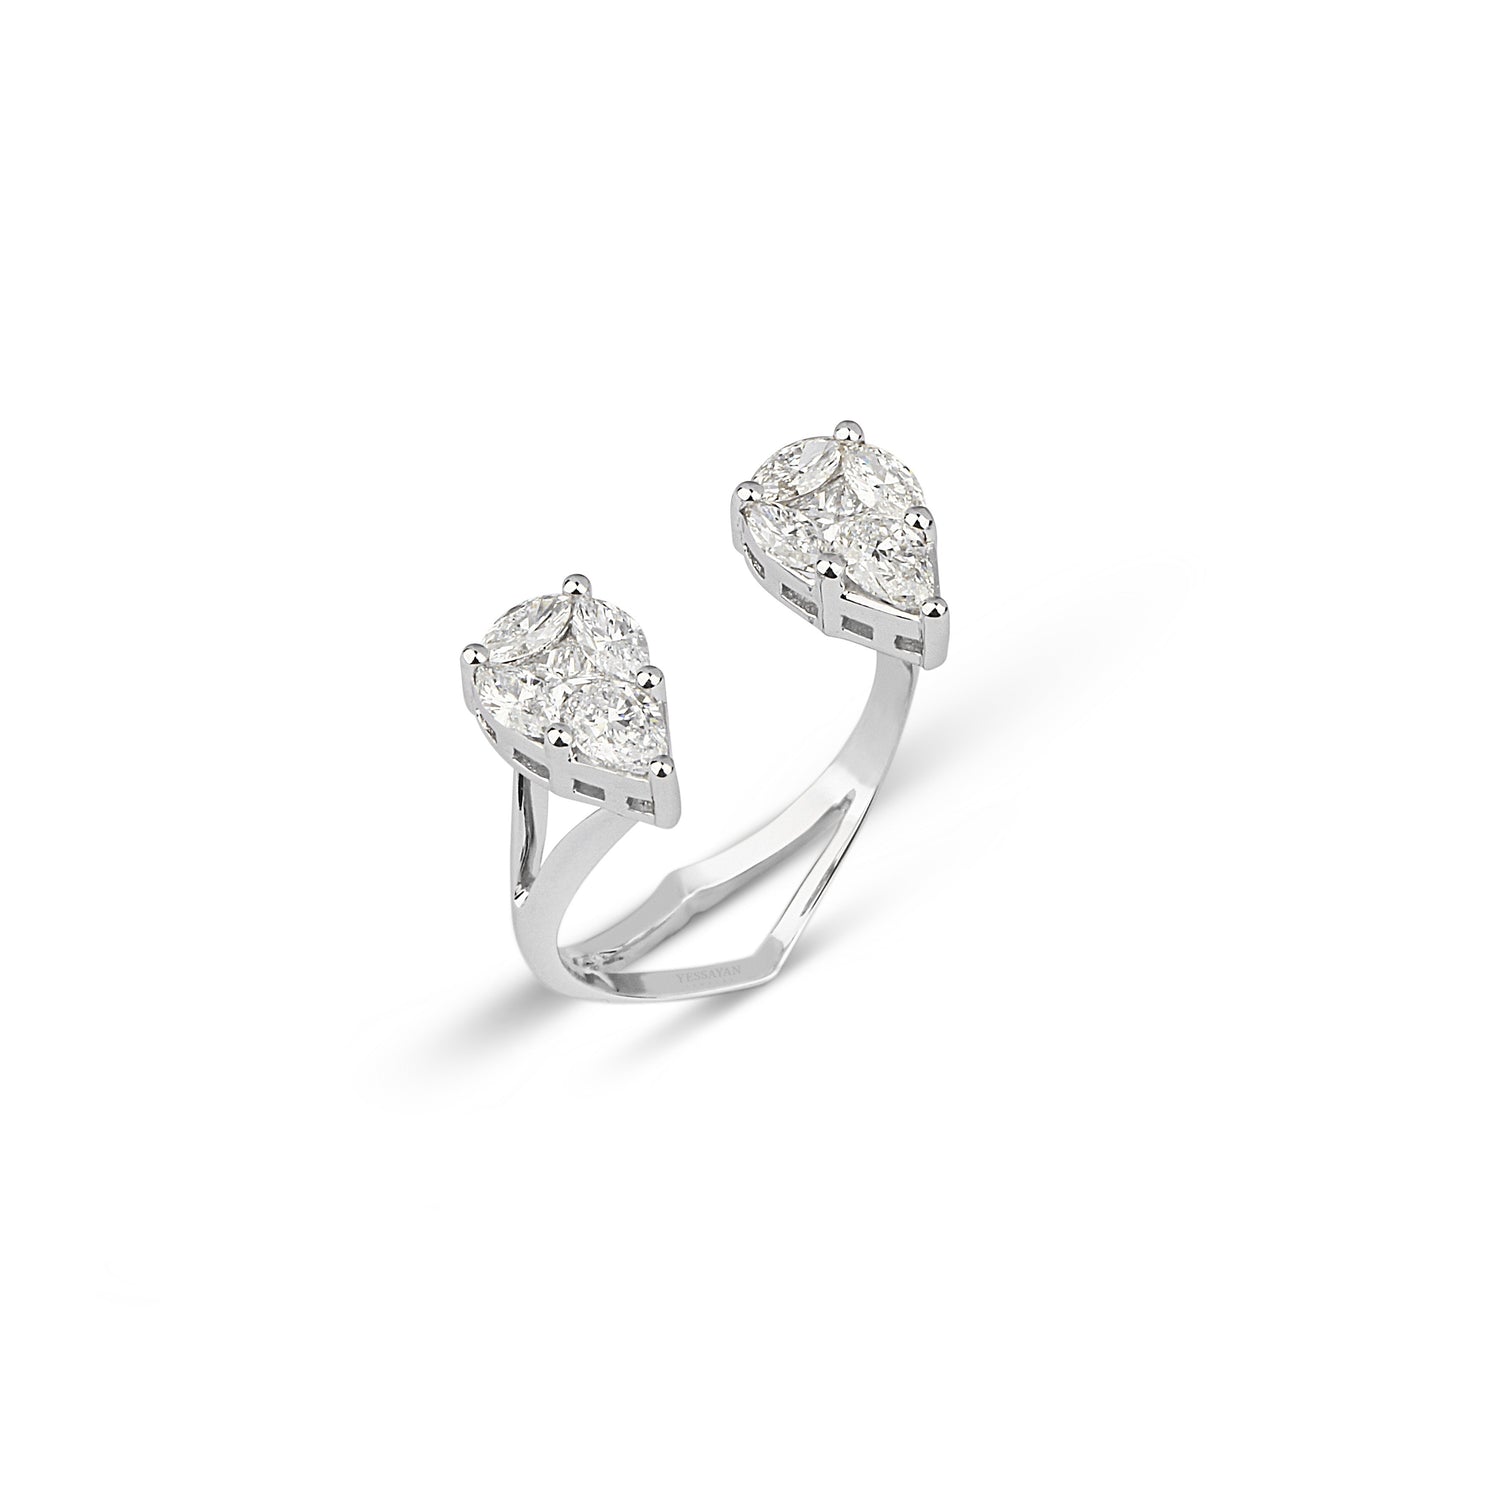 Double Illusion Diamond Ring | jewellery store | diamond rings